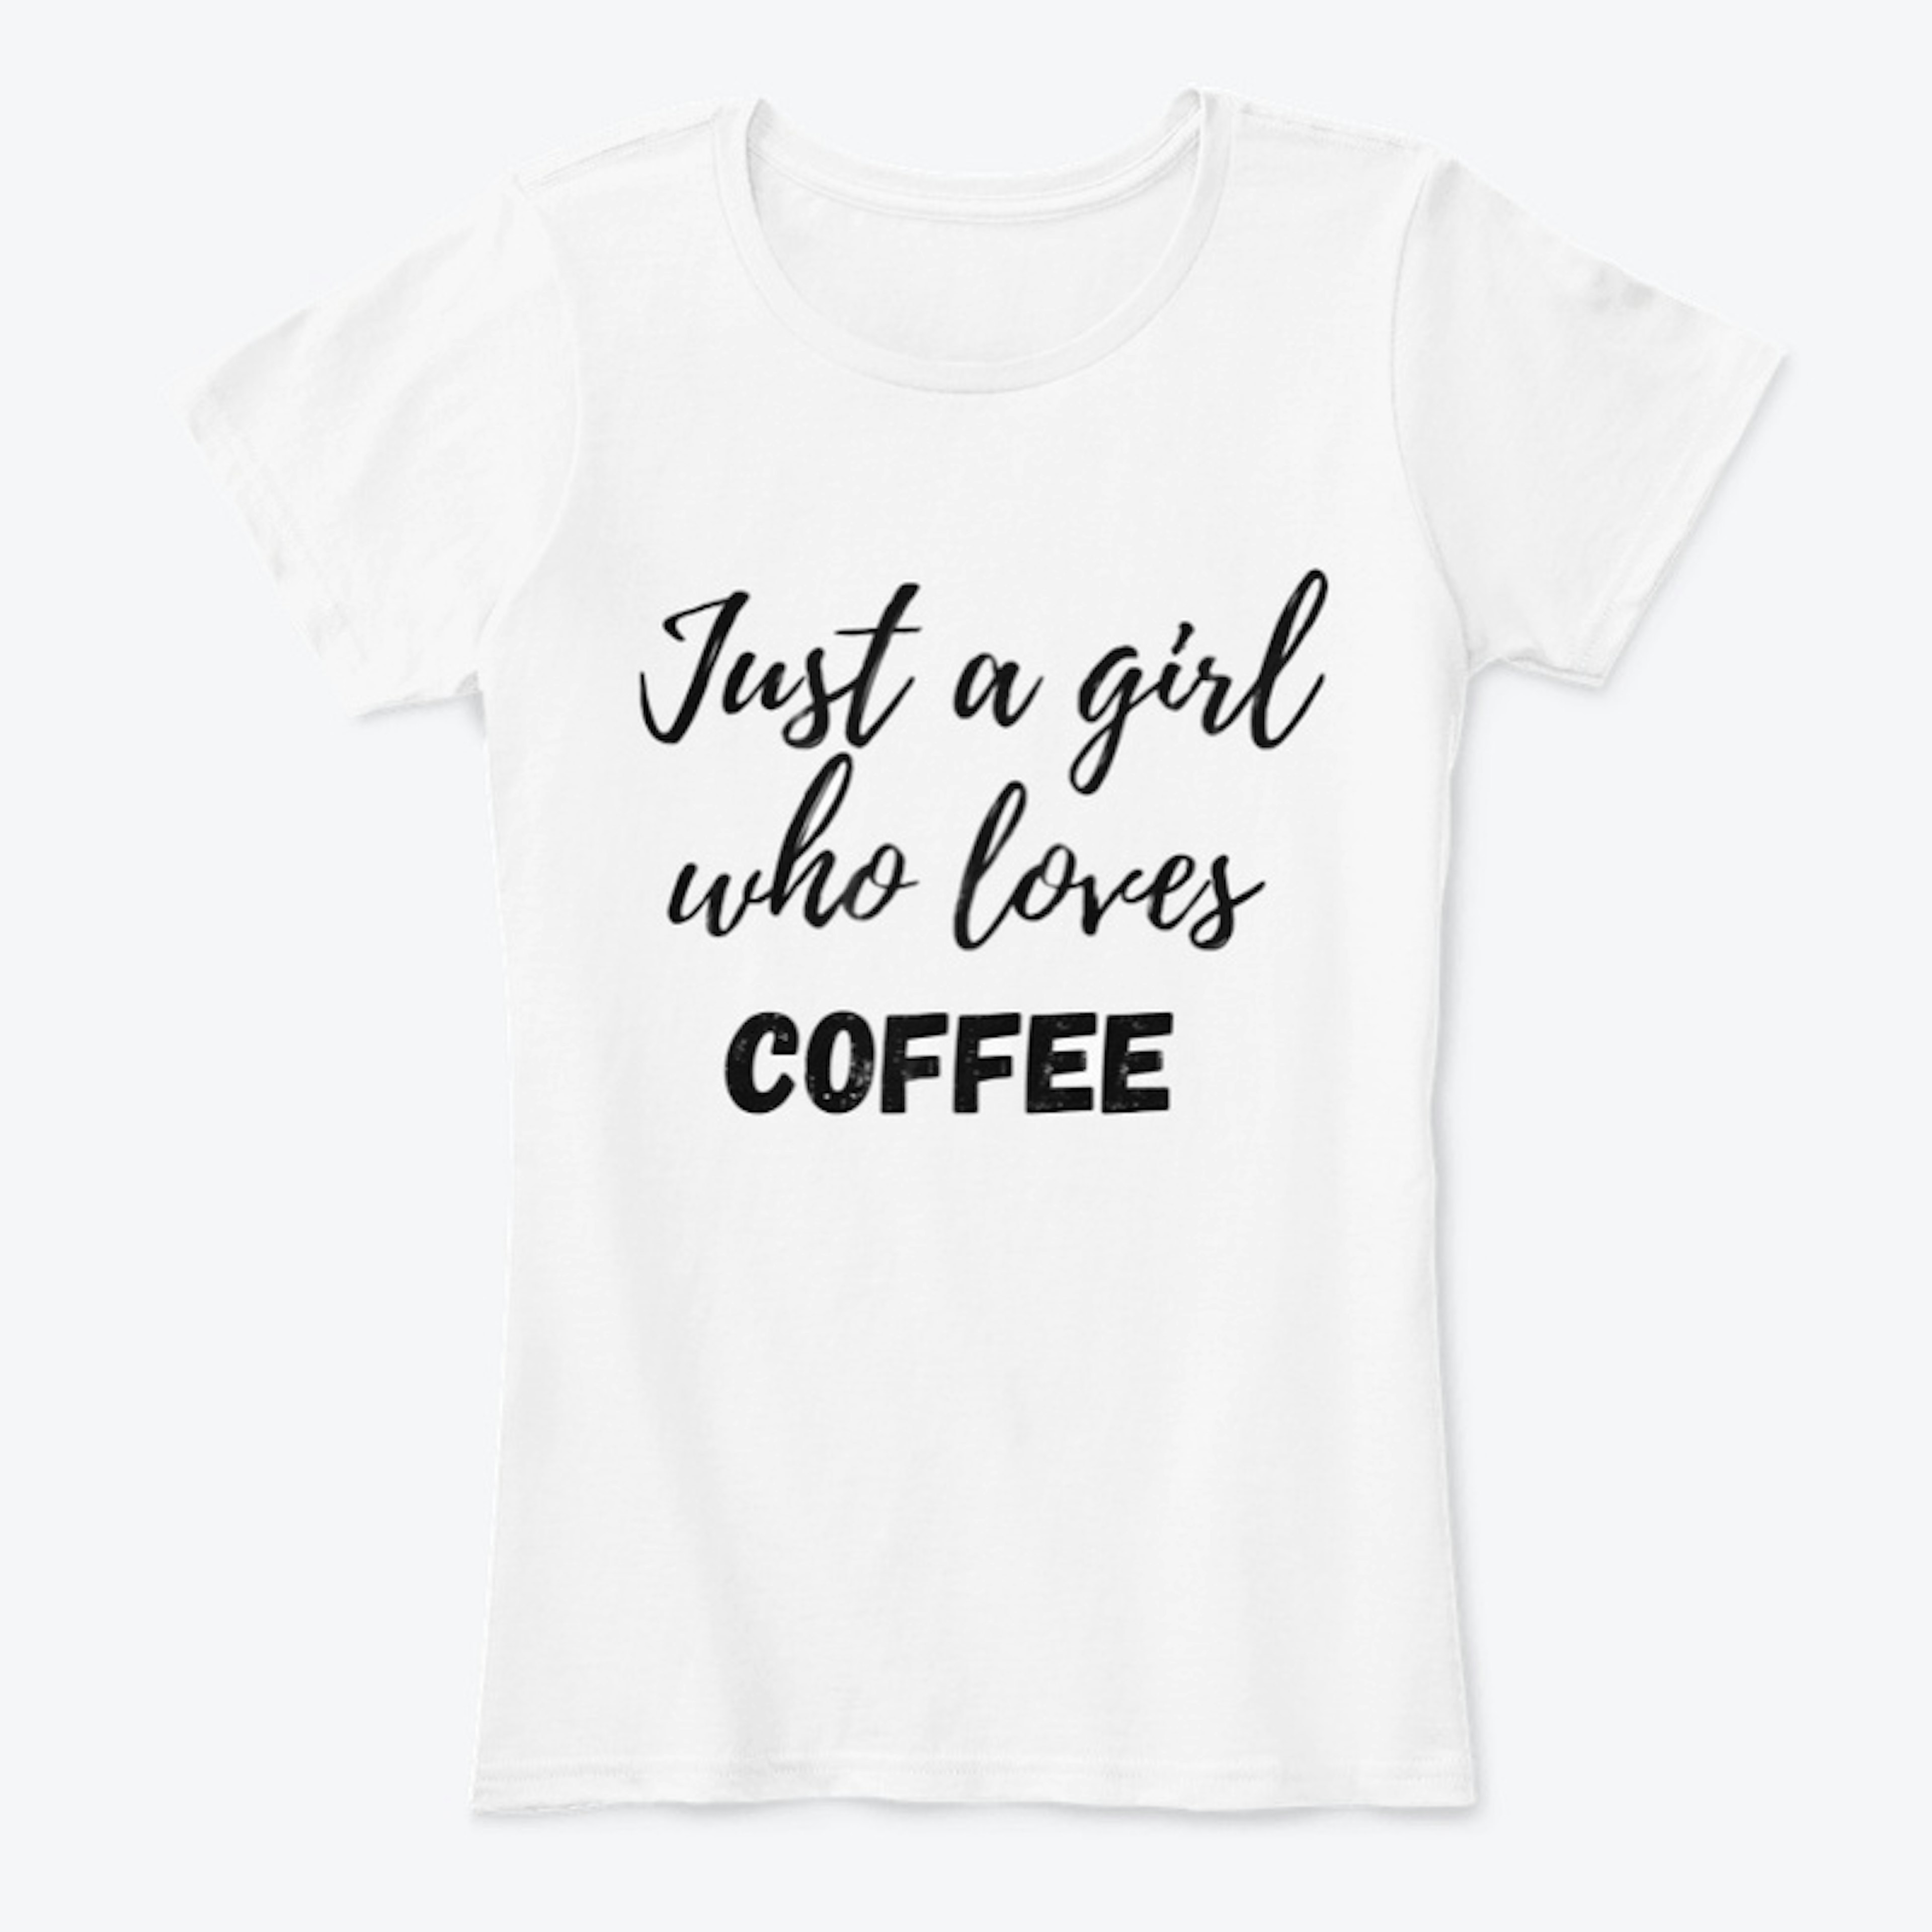 I Loves Coffee - shirt 